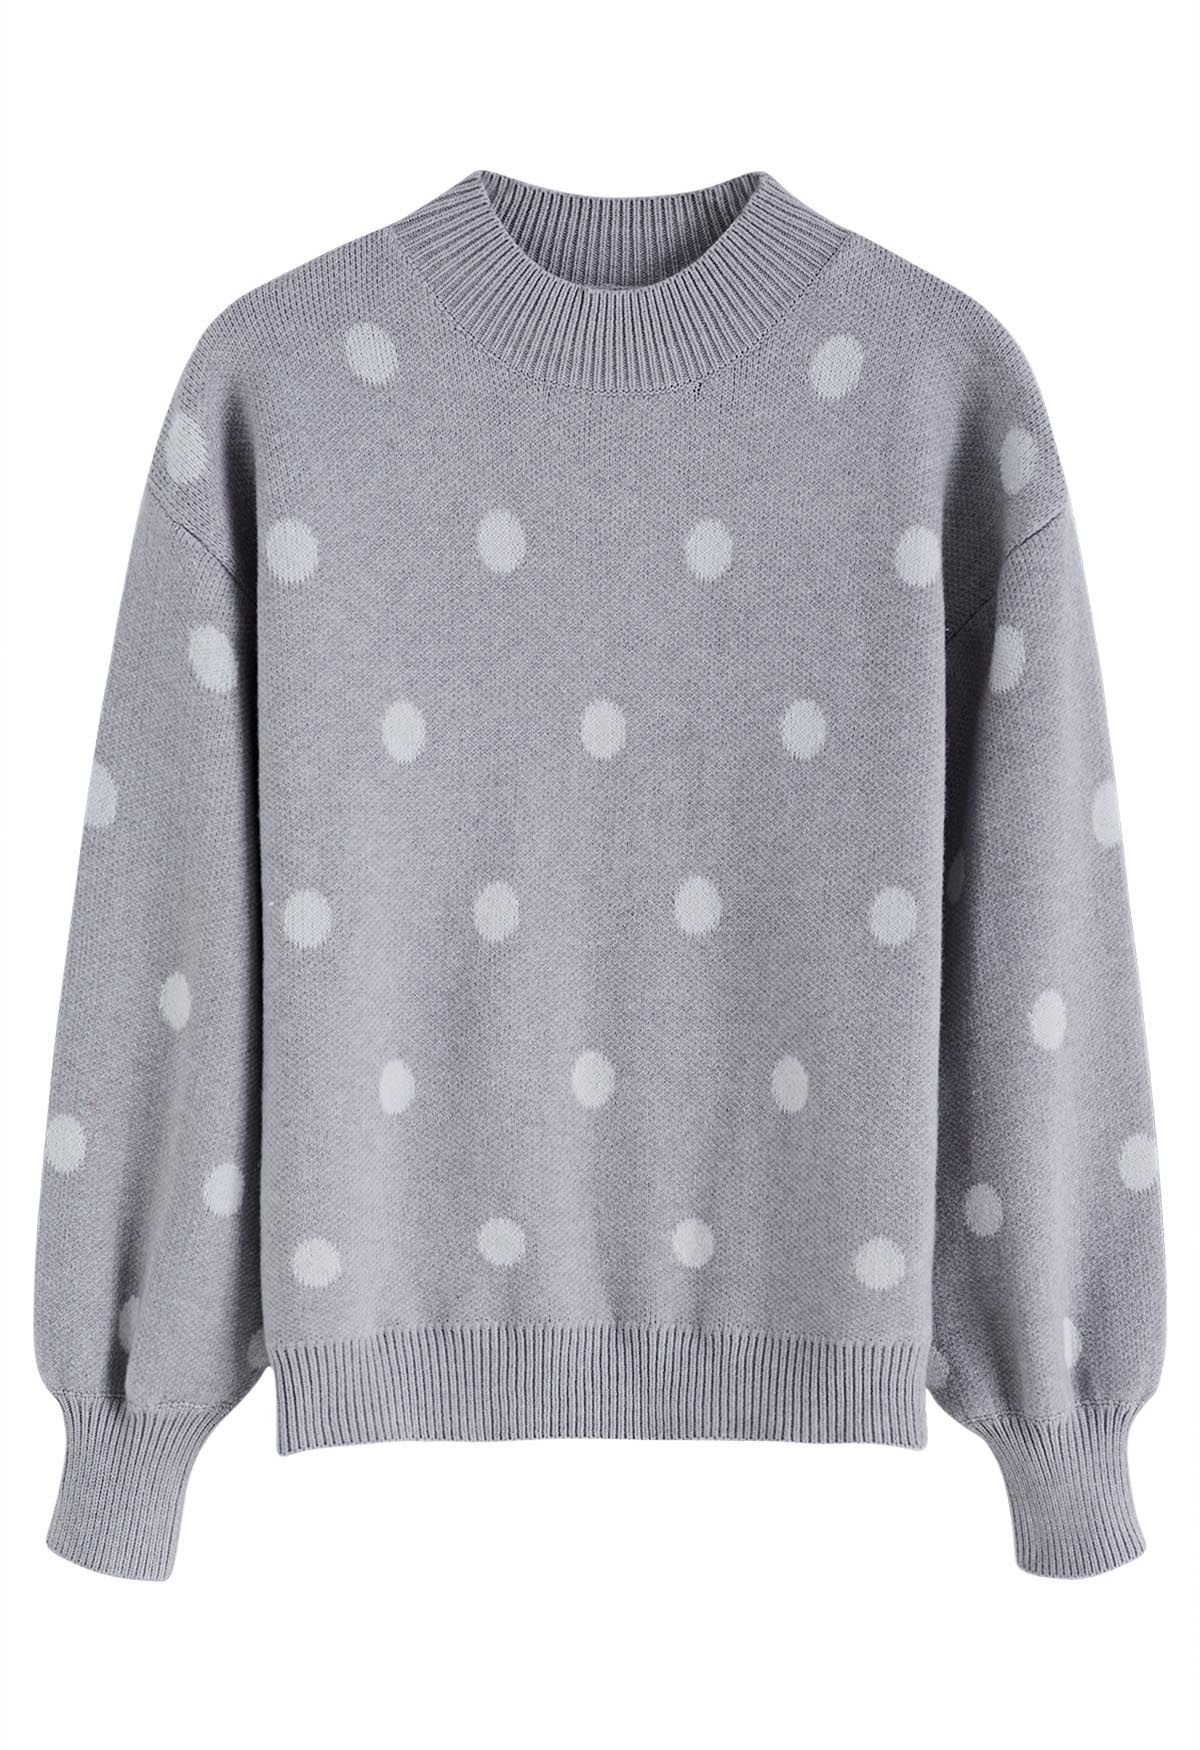 Adorable suéter de punto con cuello simulado y lunares en gris